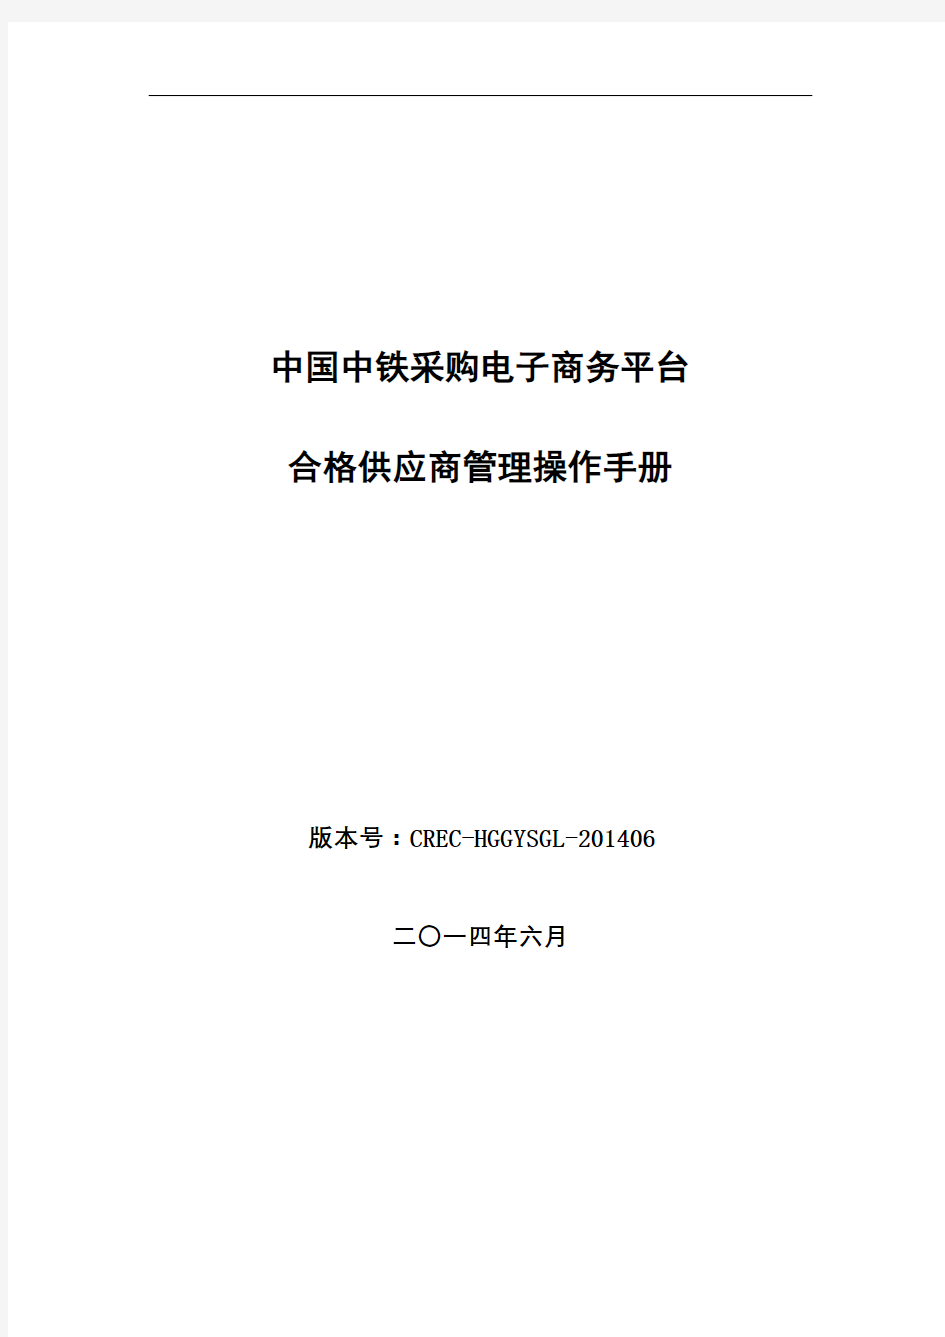 中铁电子商务平台合格供应商管理操作手册